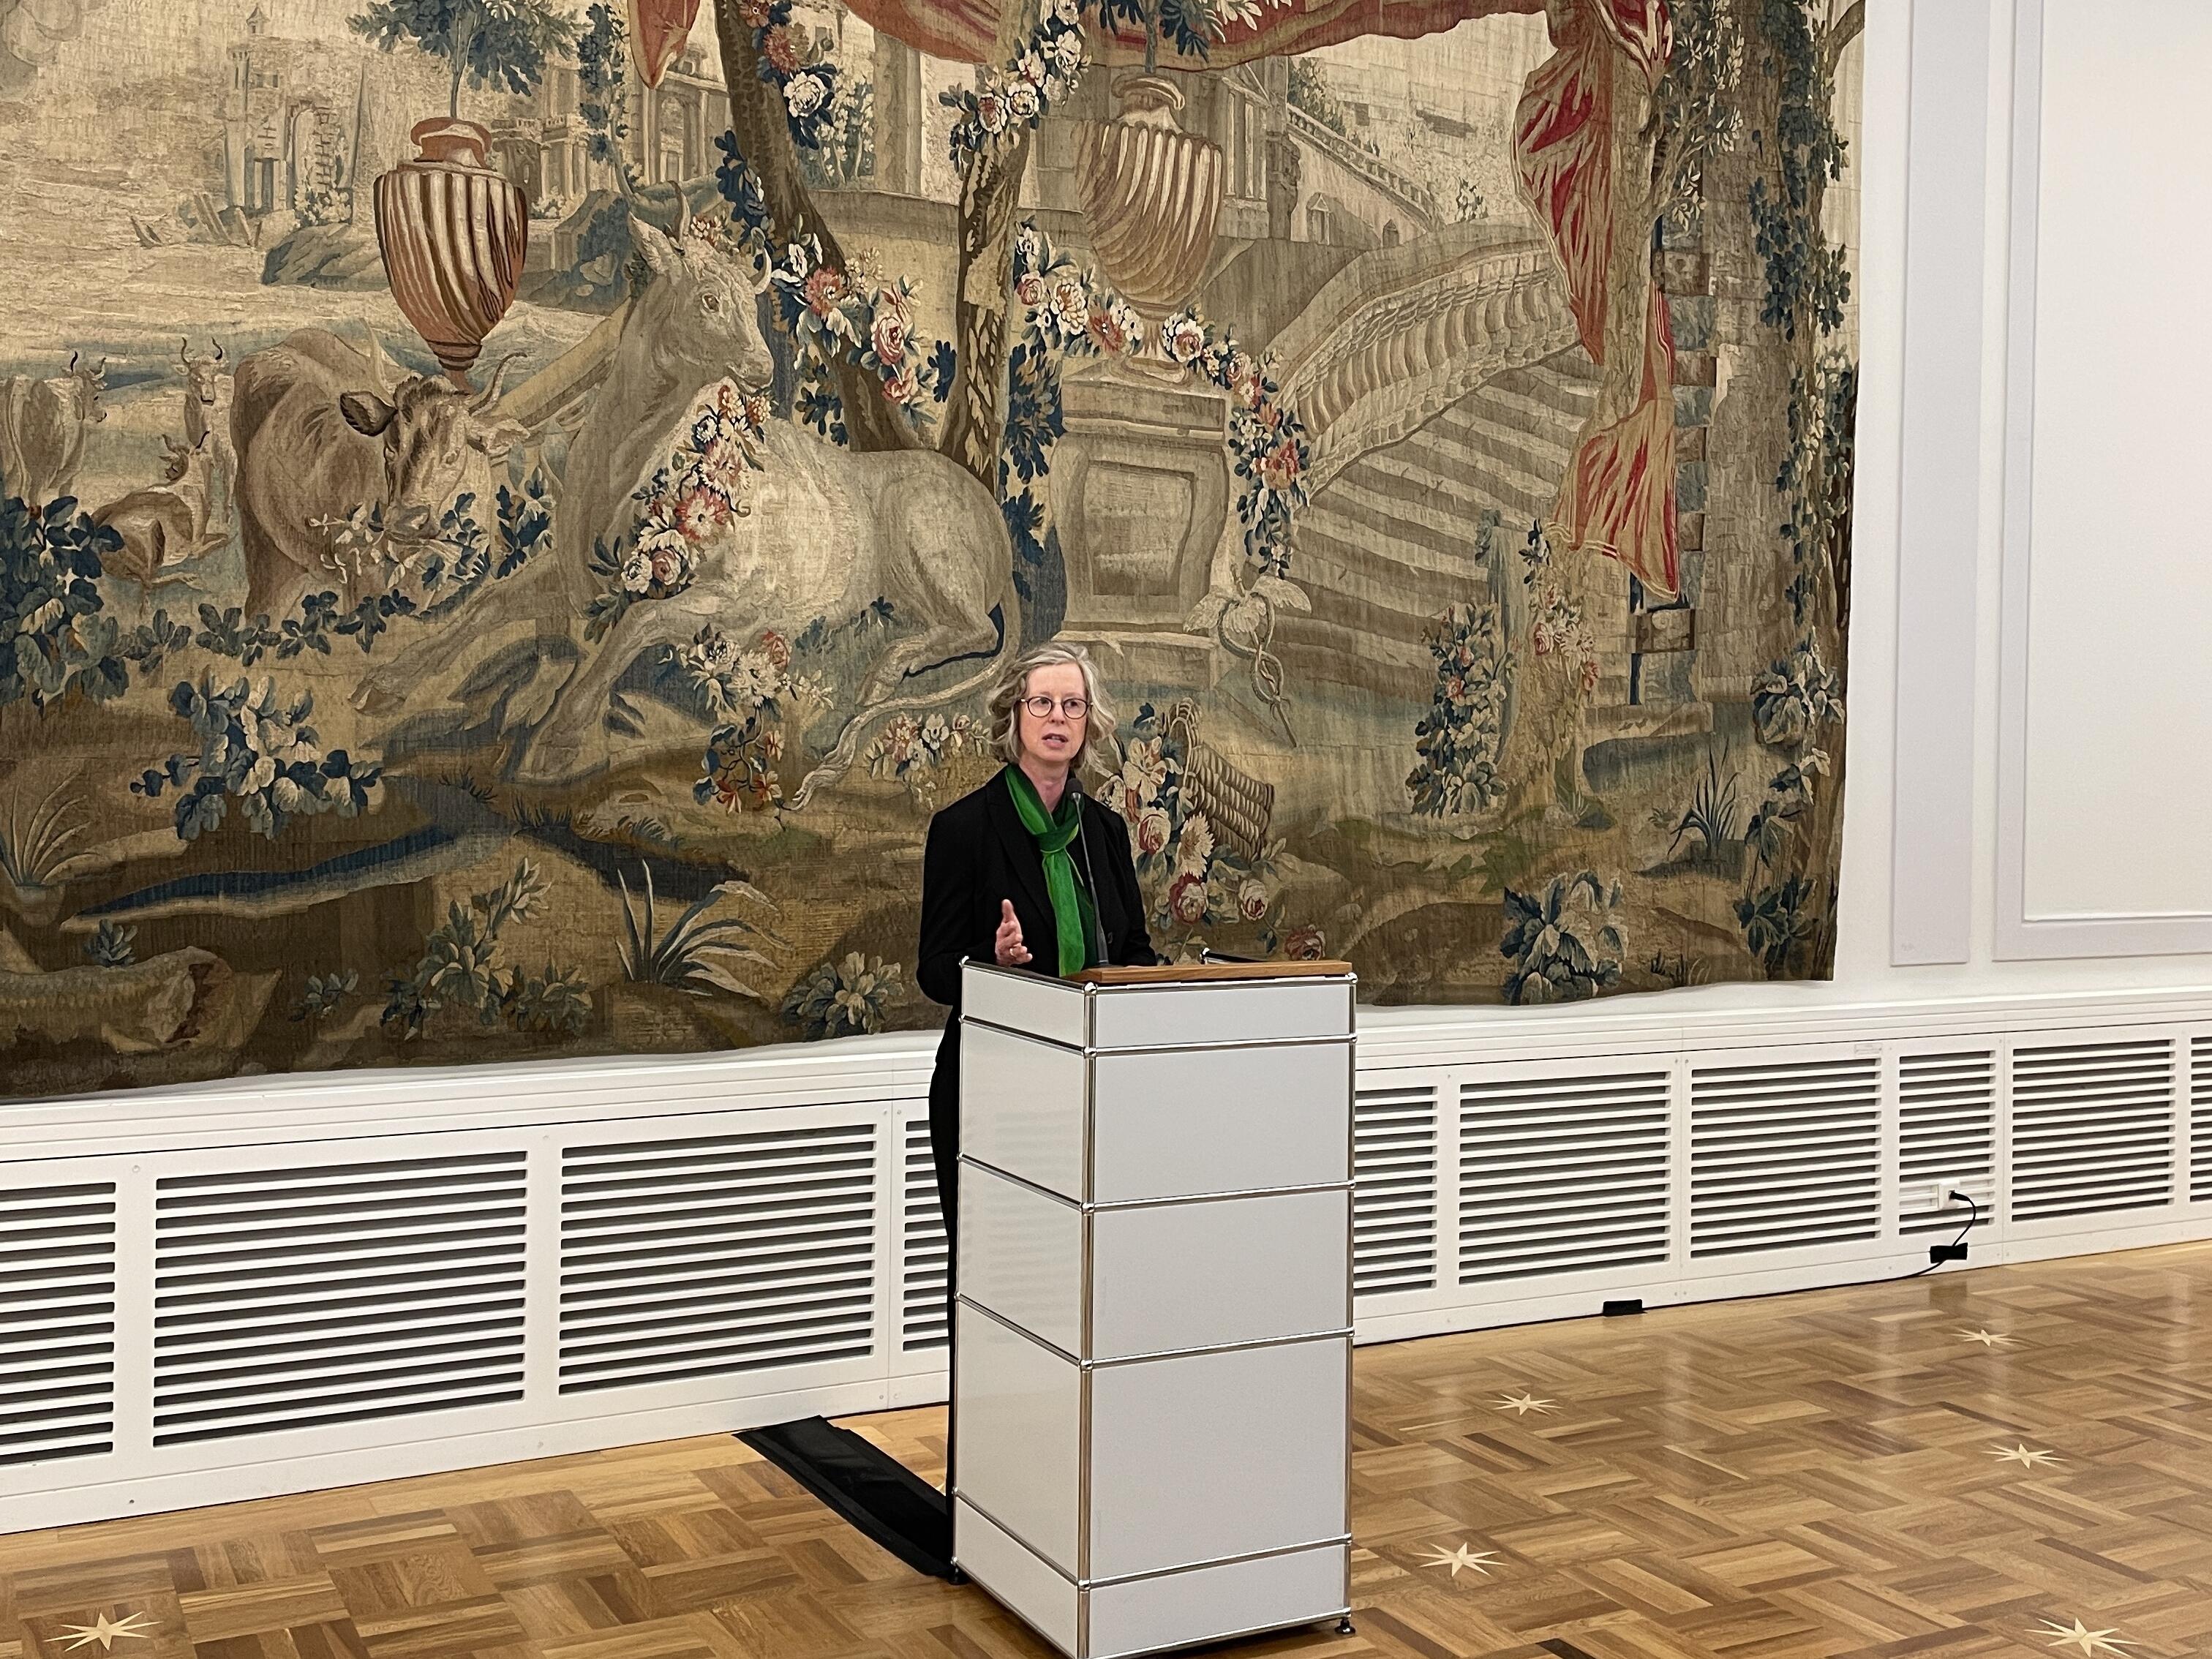 Die stellvertretende Bürgermeisterin Frau Nicole Unterseh hält eine Ansprache während des Empfangs im Alten Rathaus von Bonn.